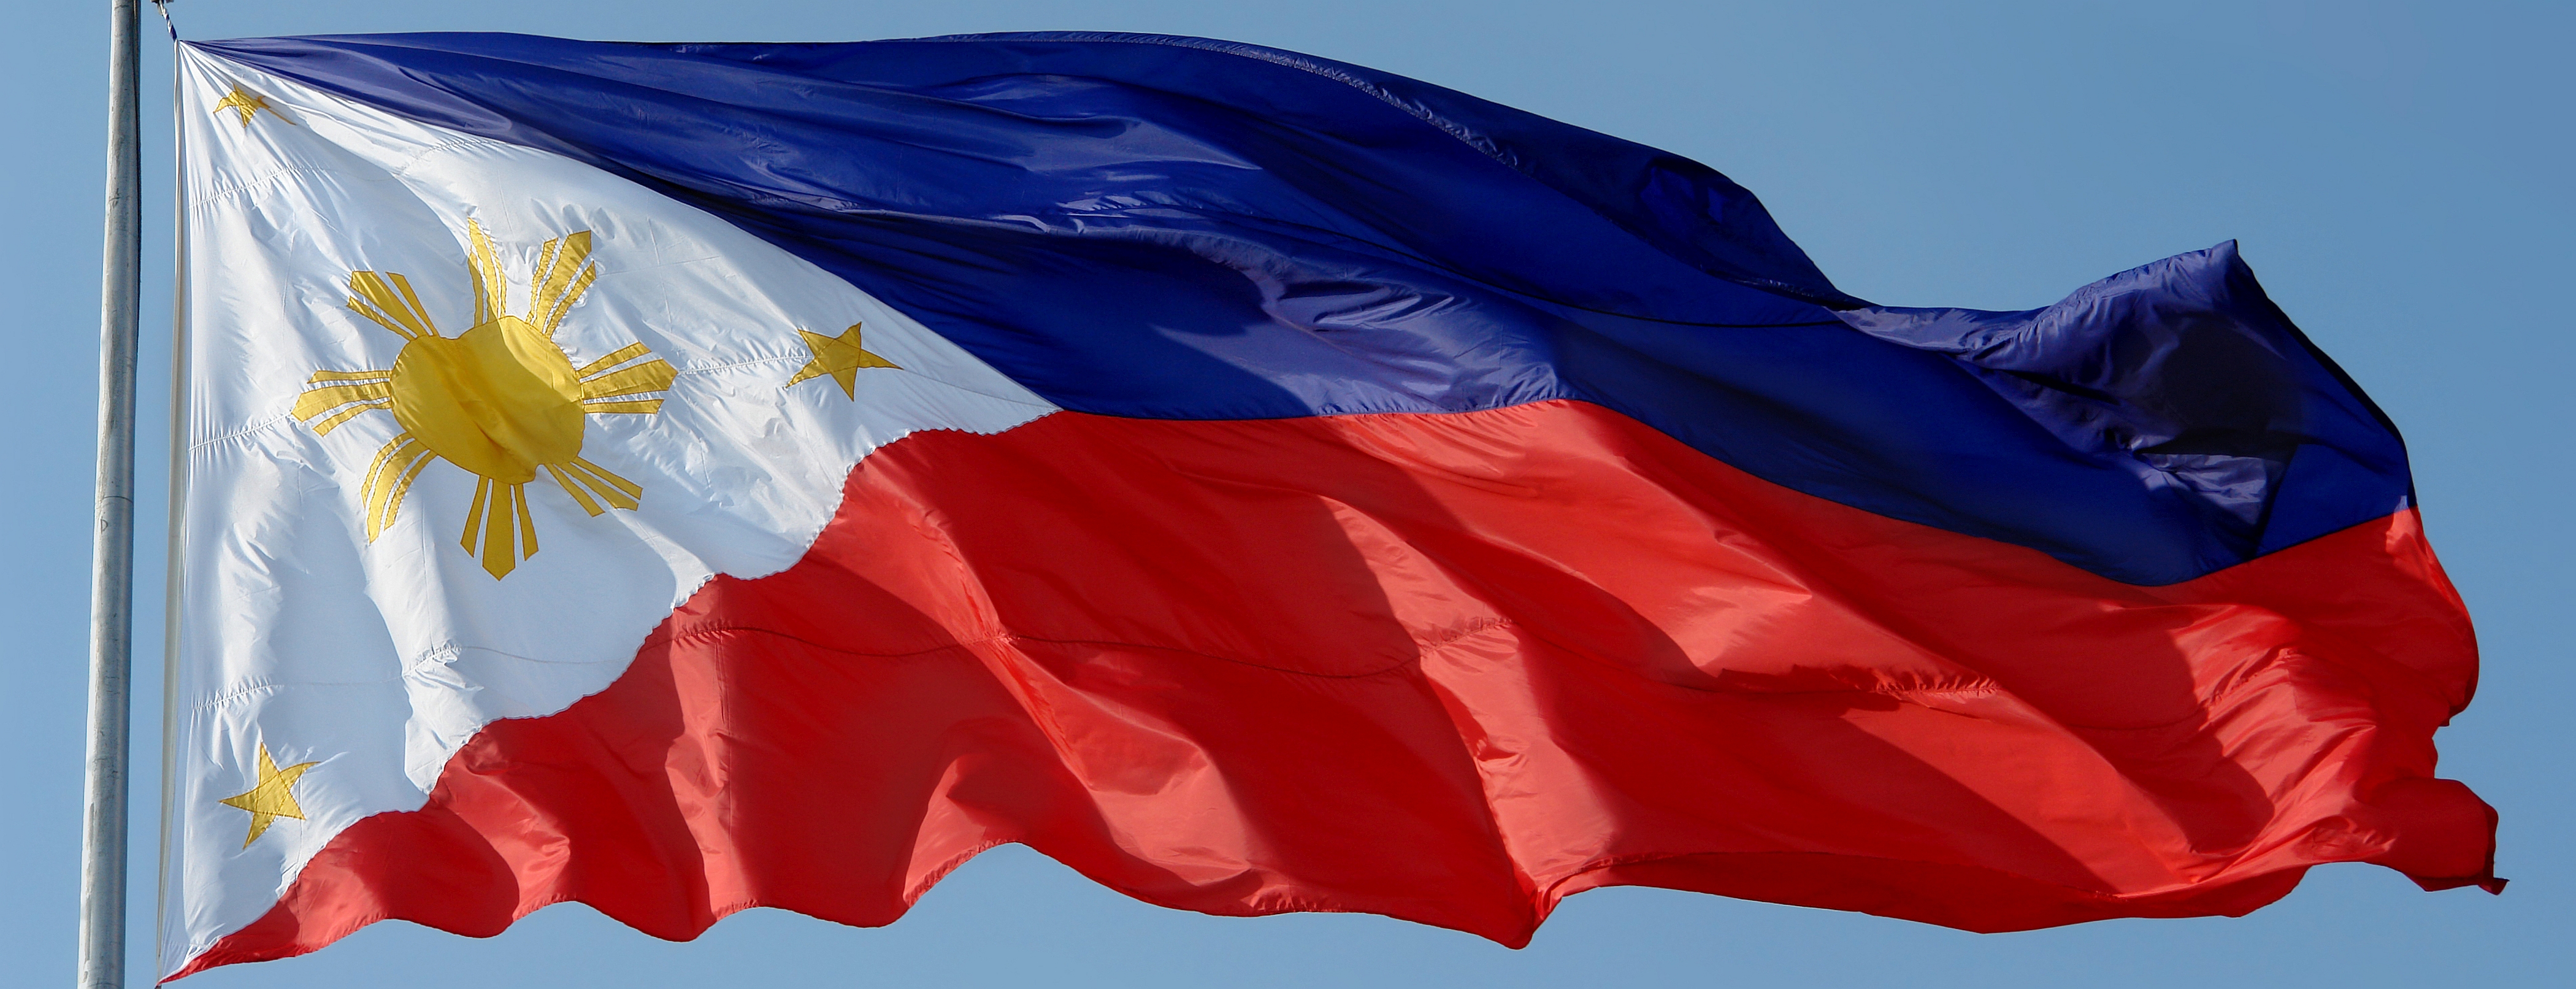 372708 Обои и Флаг Филиппин картинки на рабочий стол. Скачать  заставки на ПК бесплатно